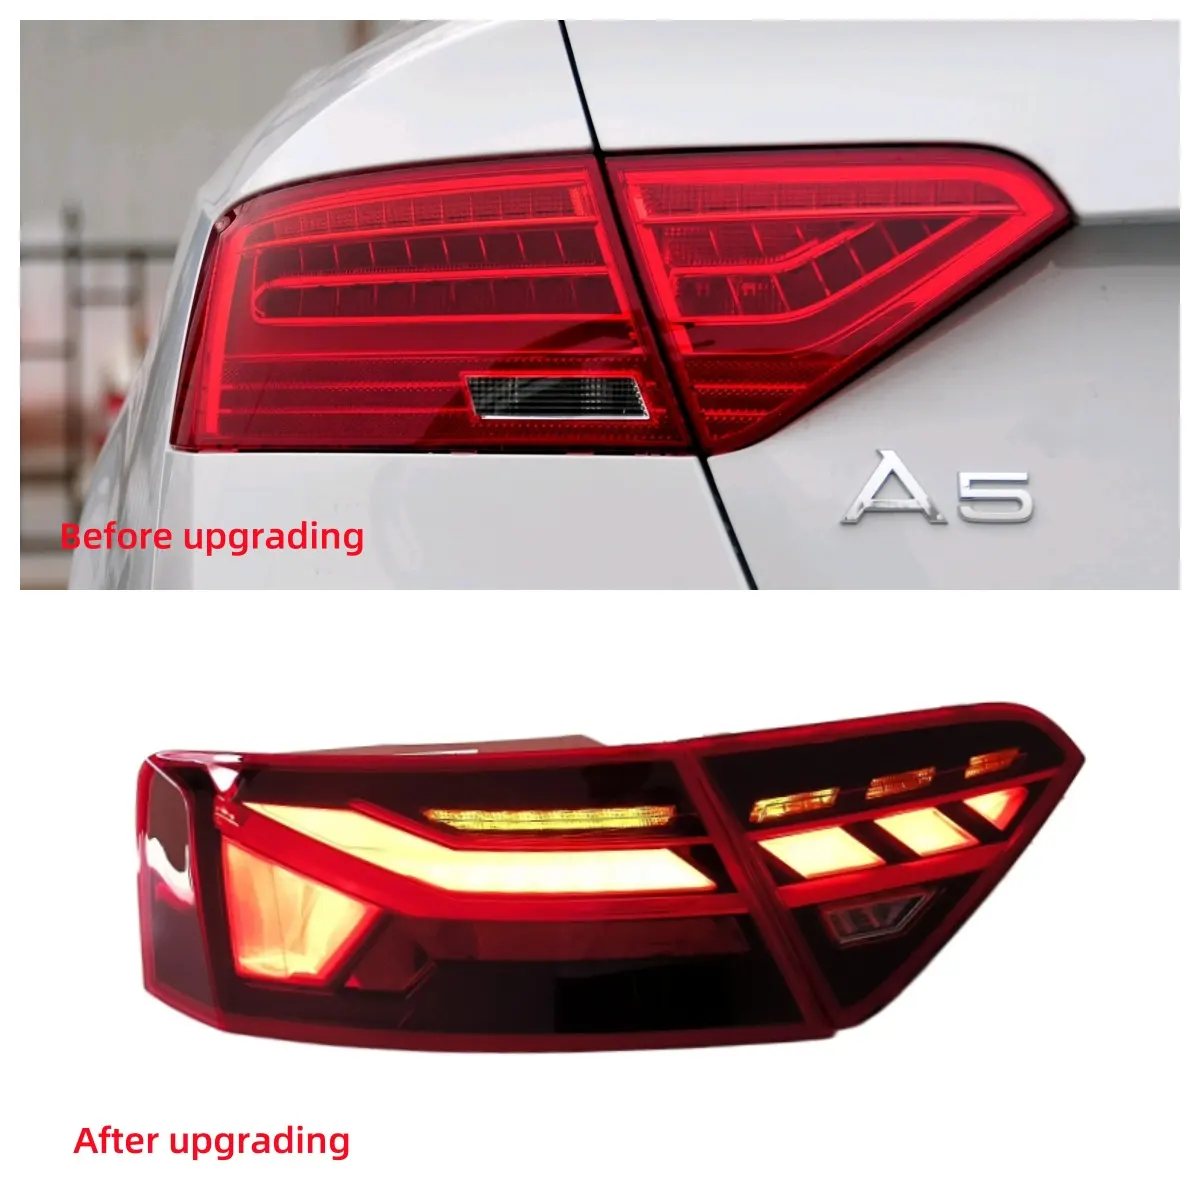 Accesorios de coche luz trasera LED Plug and Play Actualización de luz trasera LED para 2013-2016 Audi A5 luz trasera